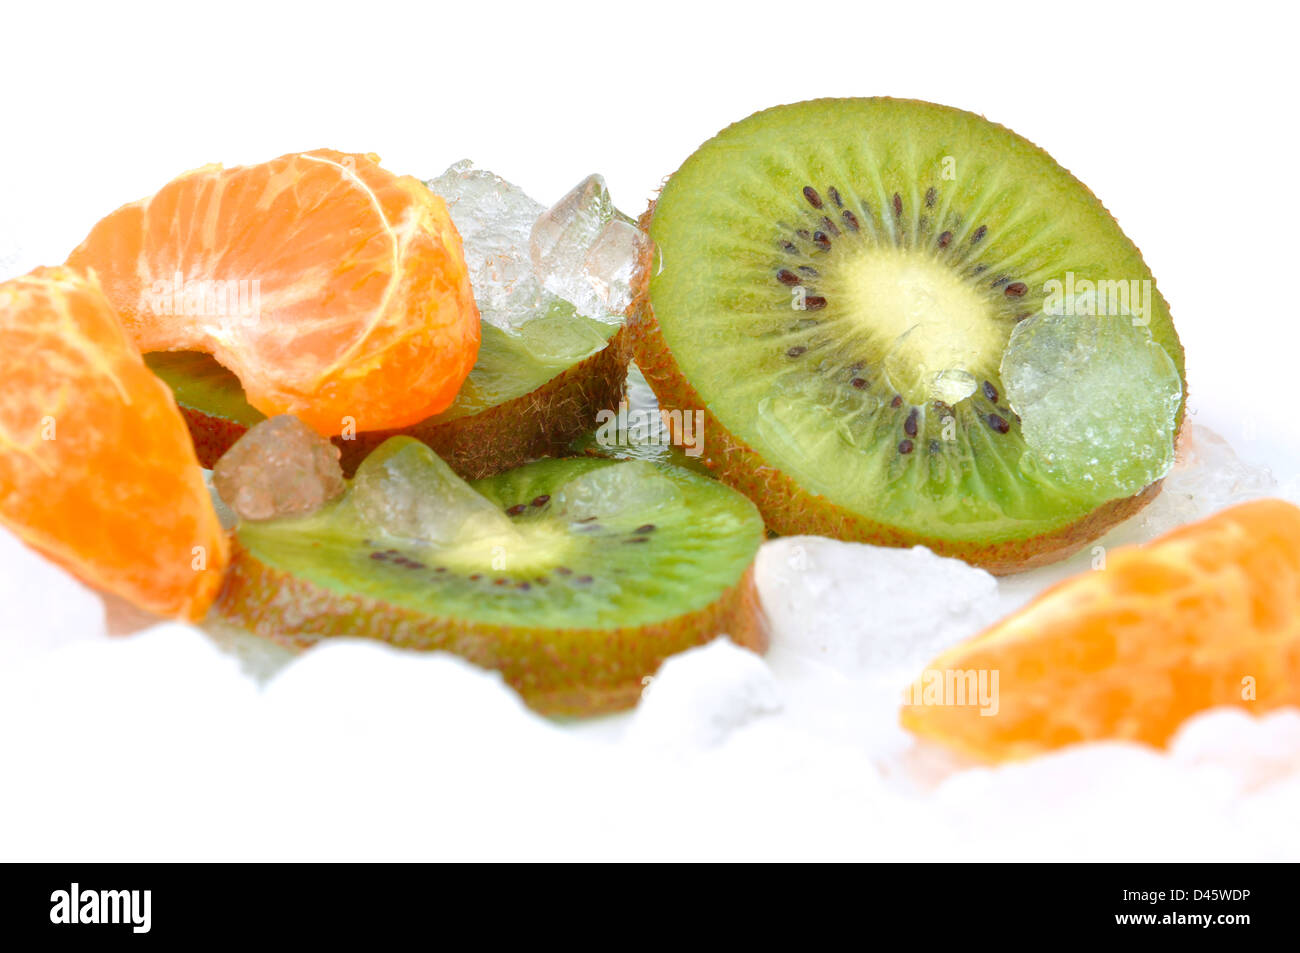 Mandarino e kiwi le fette su ghiaccio tritato Foto Stock